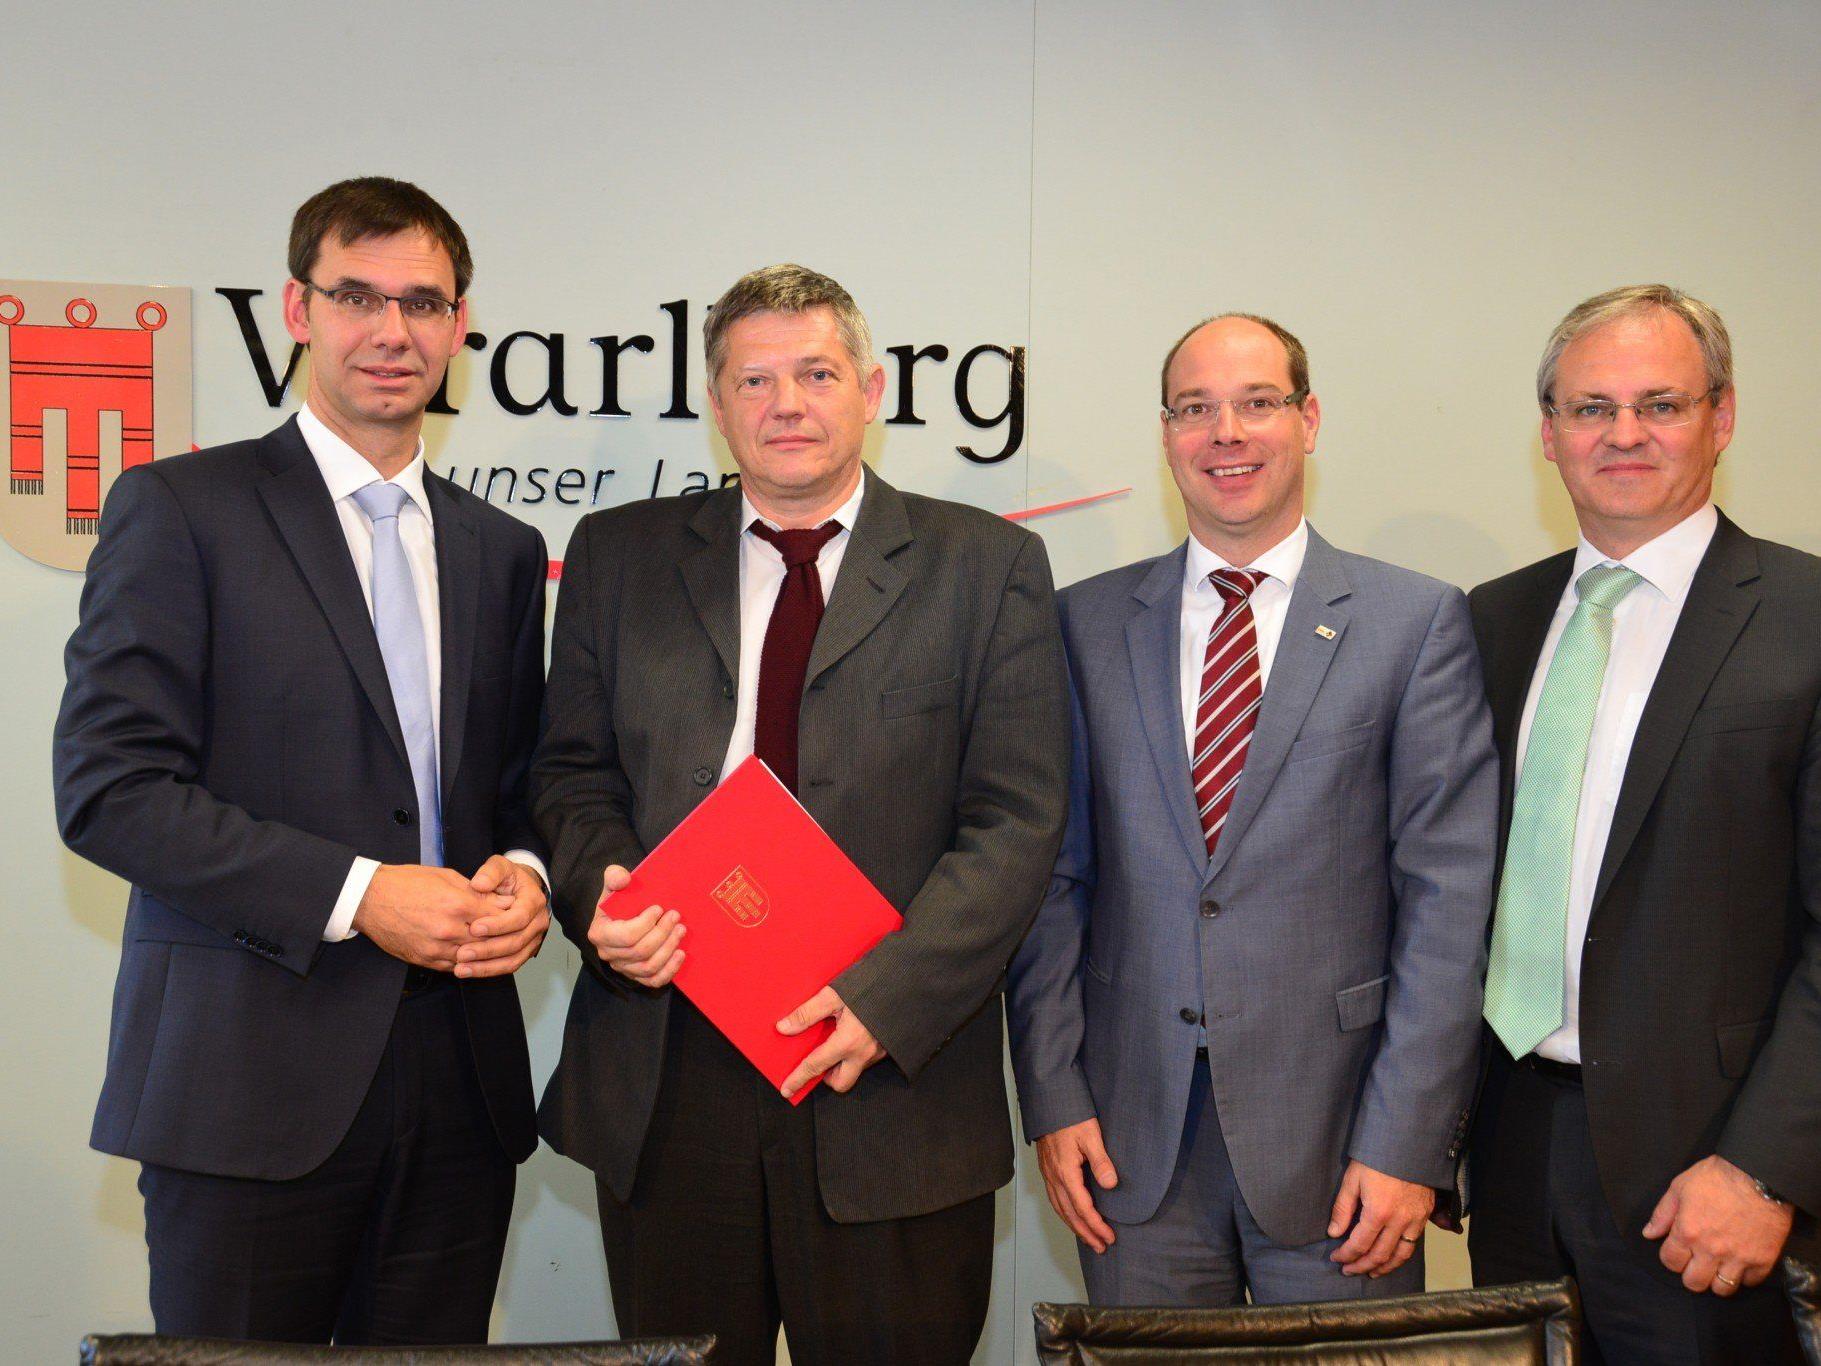 Der Landeshauptmann überreichte dem neu gewählten Leiter der FH Vorarlberg Oskar Müller das Ernennungsdekret zum Rektor.